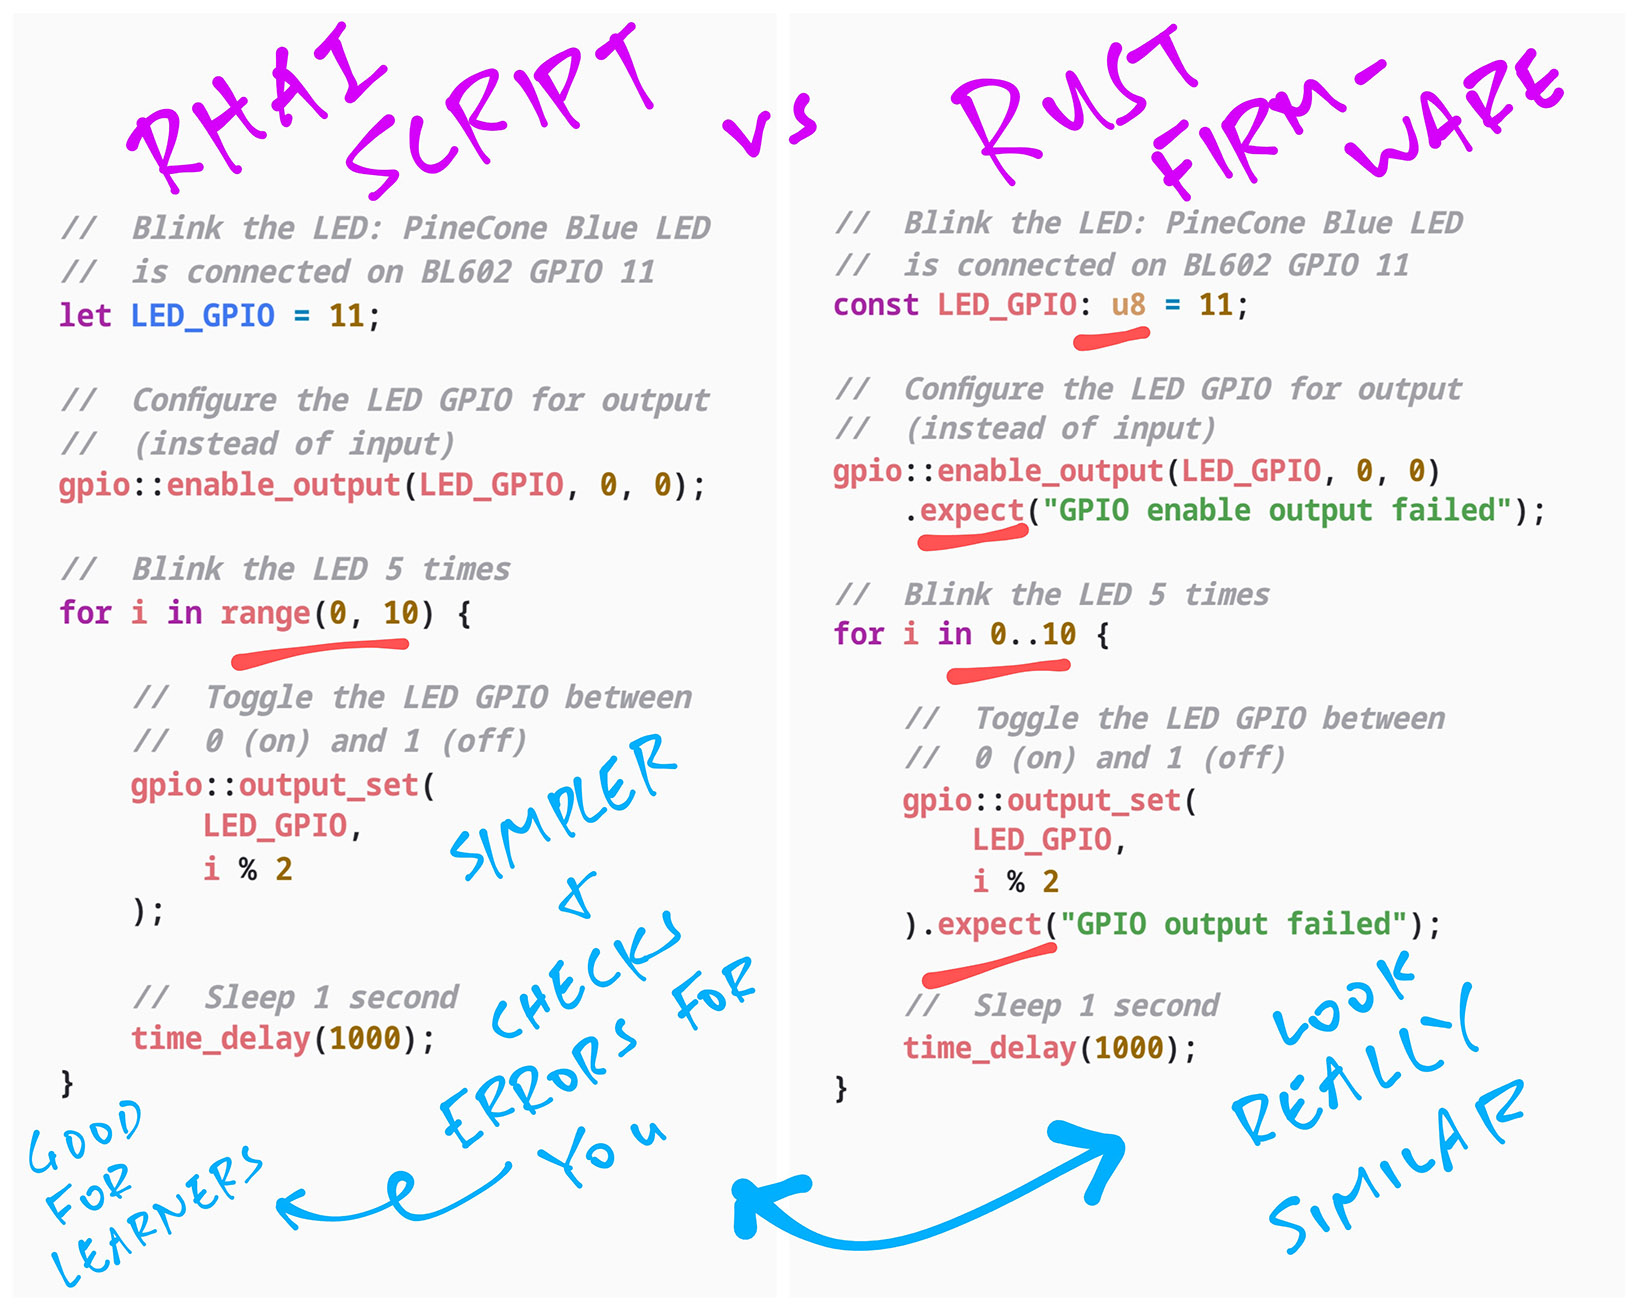 Rhai Script vs Rust Firmware